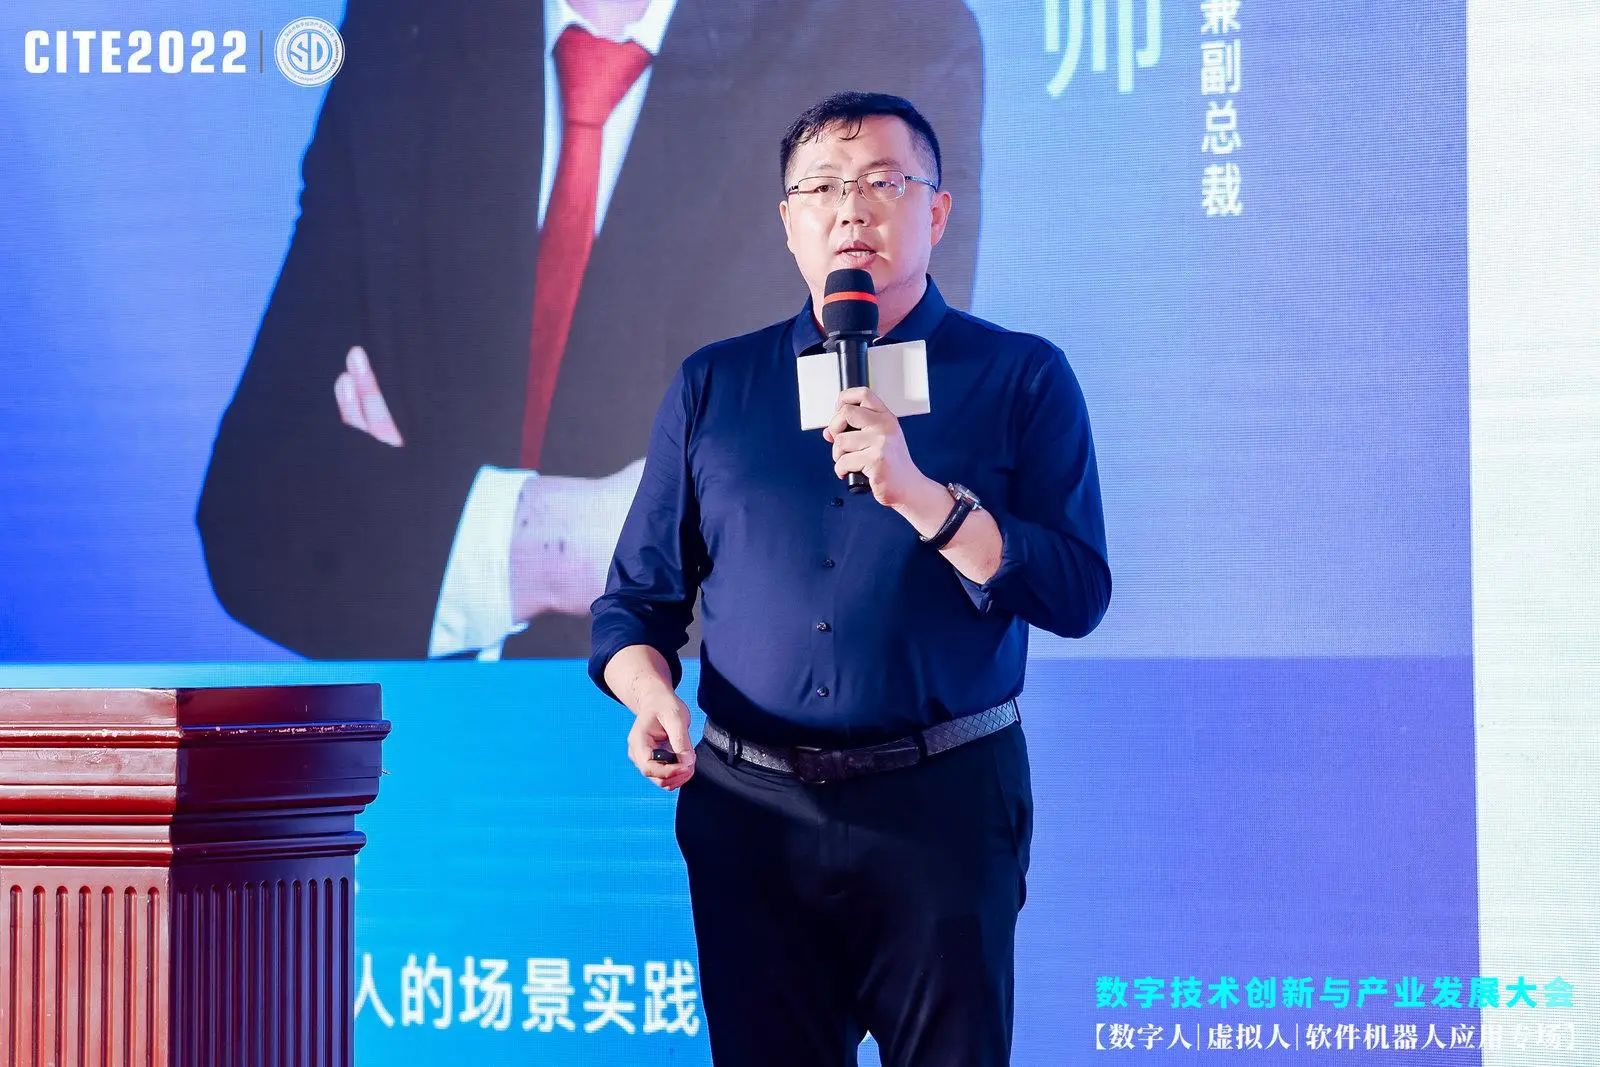 来也科技合伙人兼副总裁 刘敬帅 主题演讲